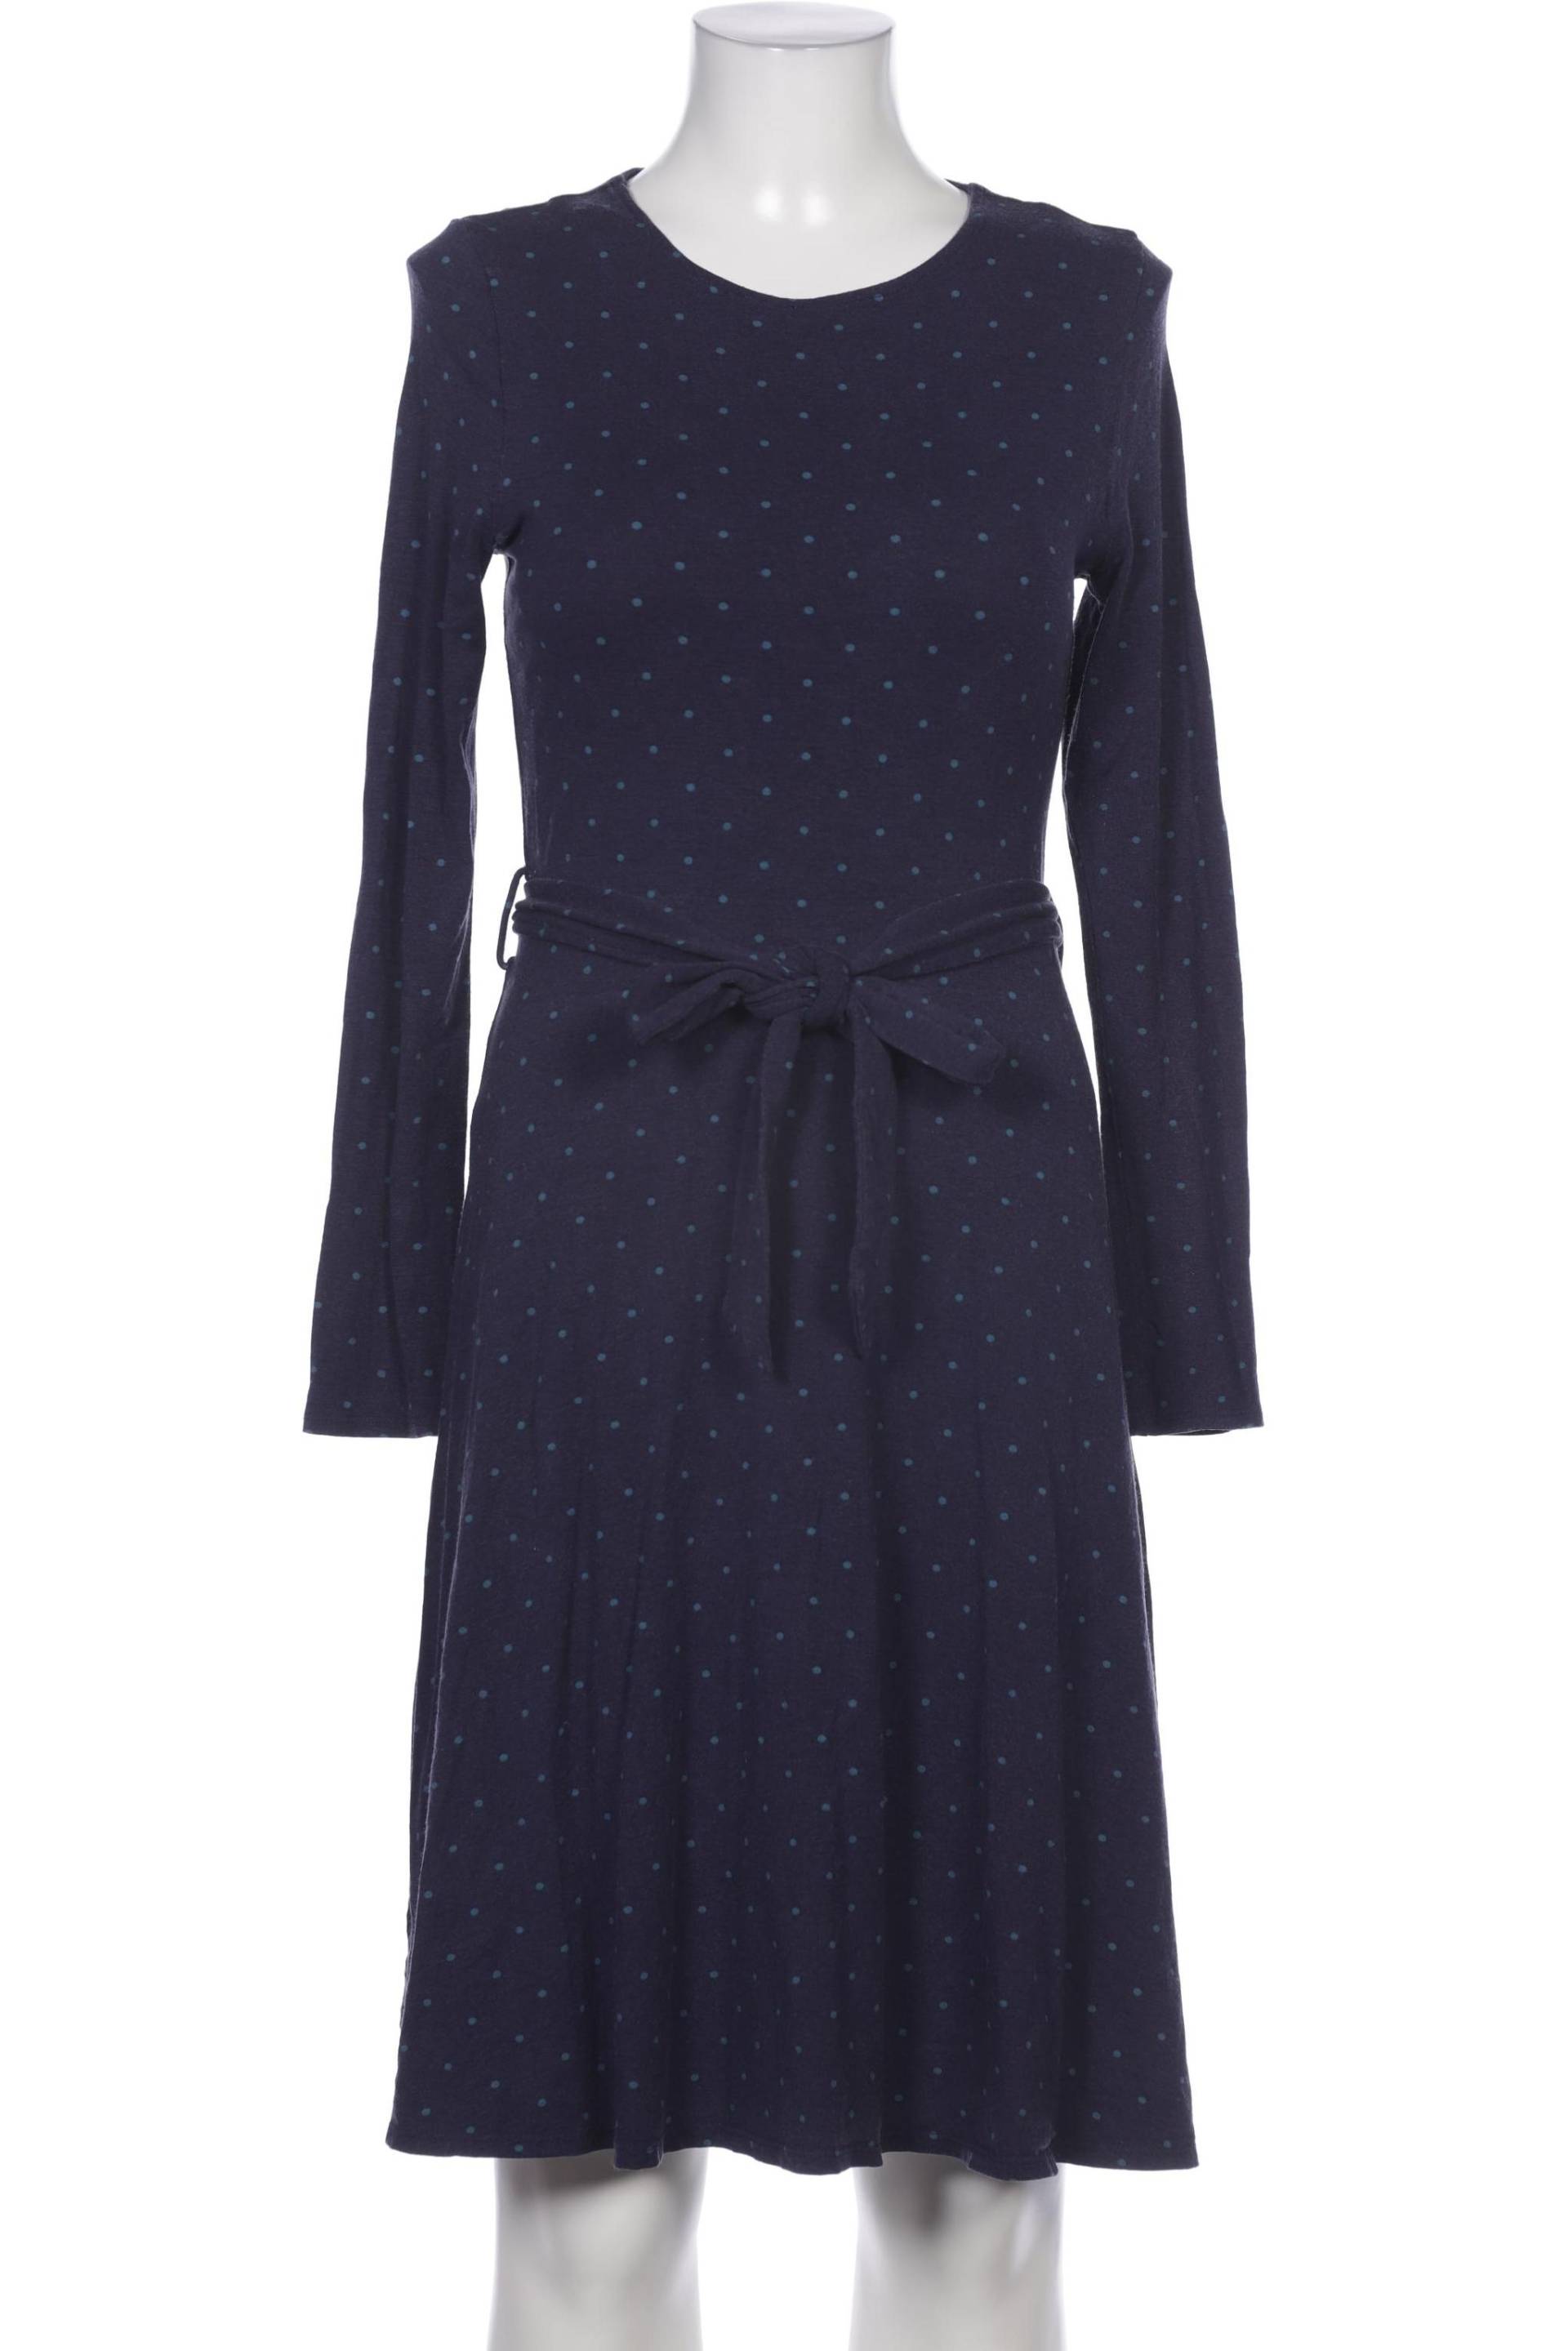 Joules Damen Kleid, marineblau, Gr. 40 von Joules